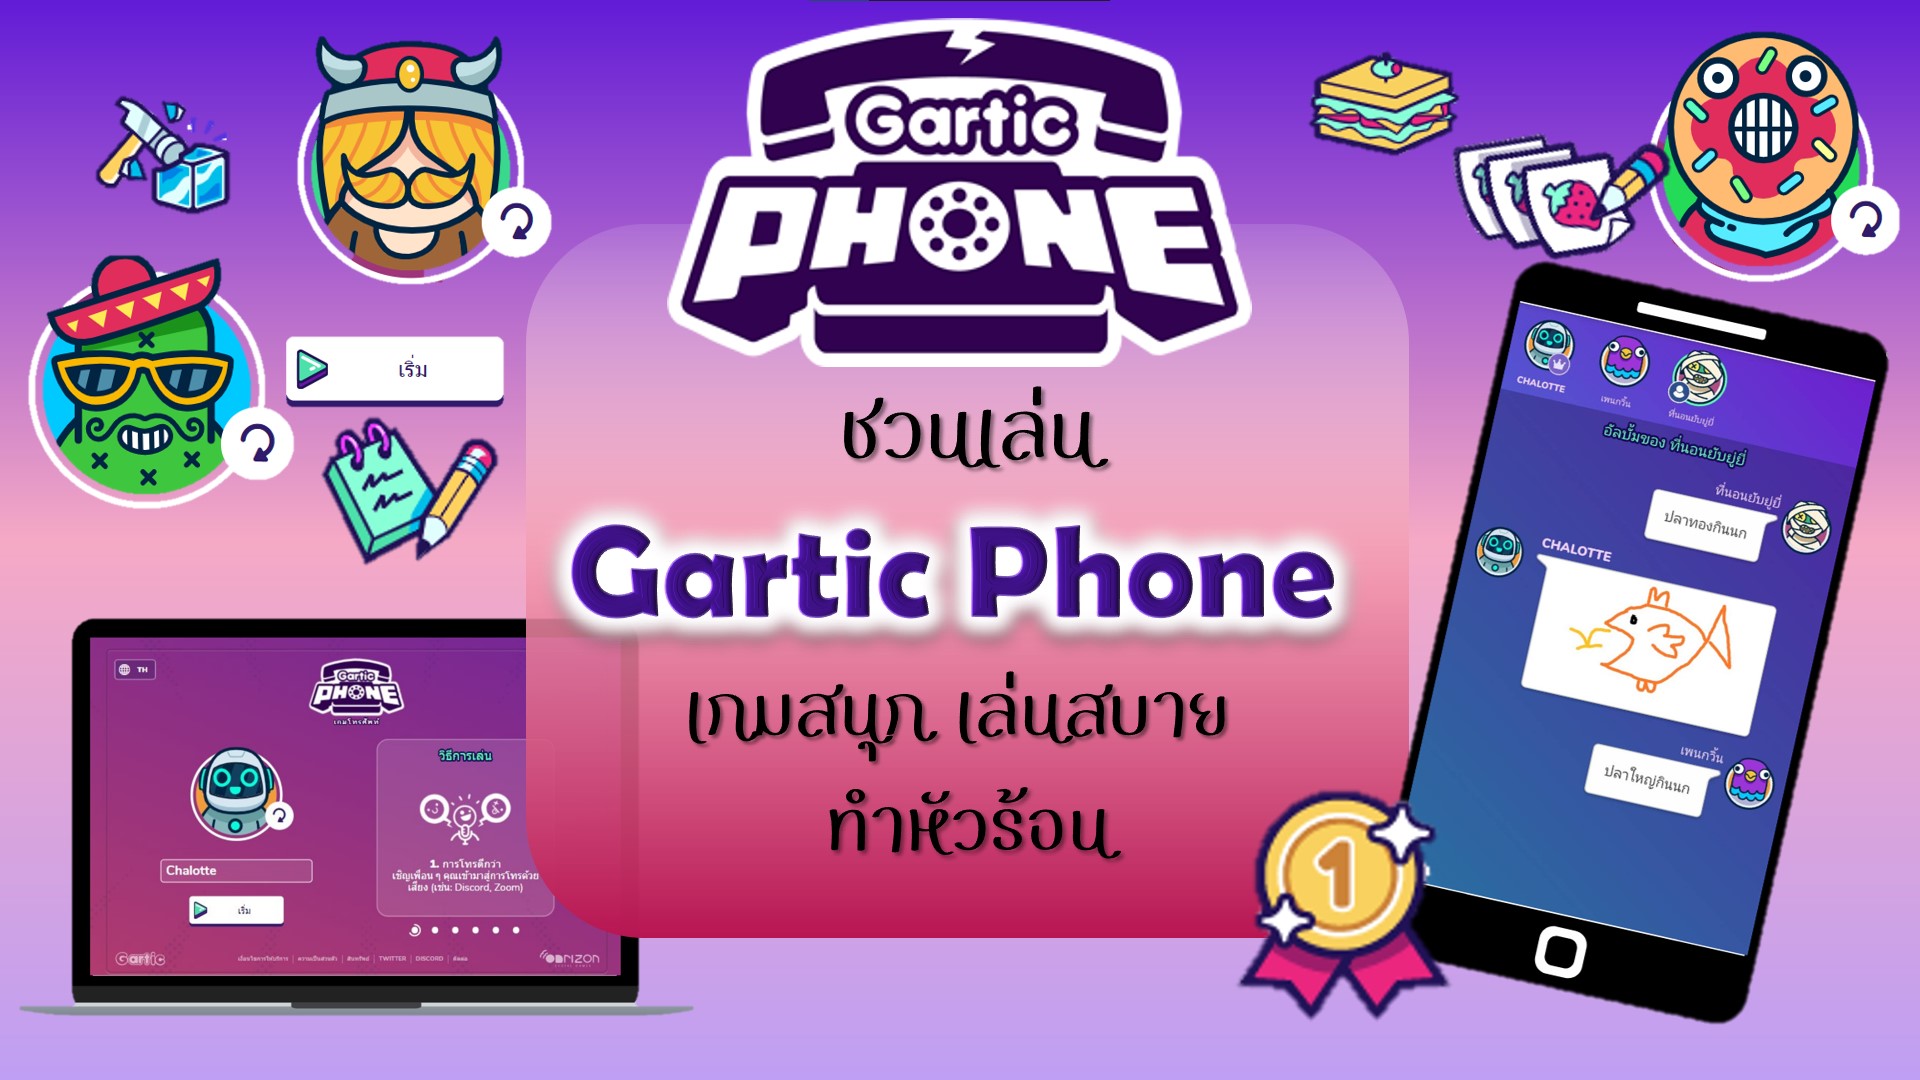 Gartic phone